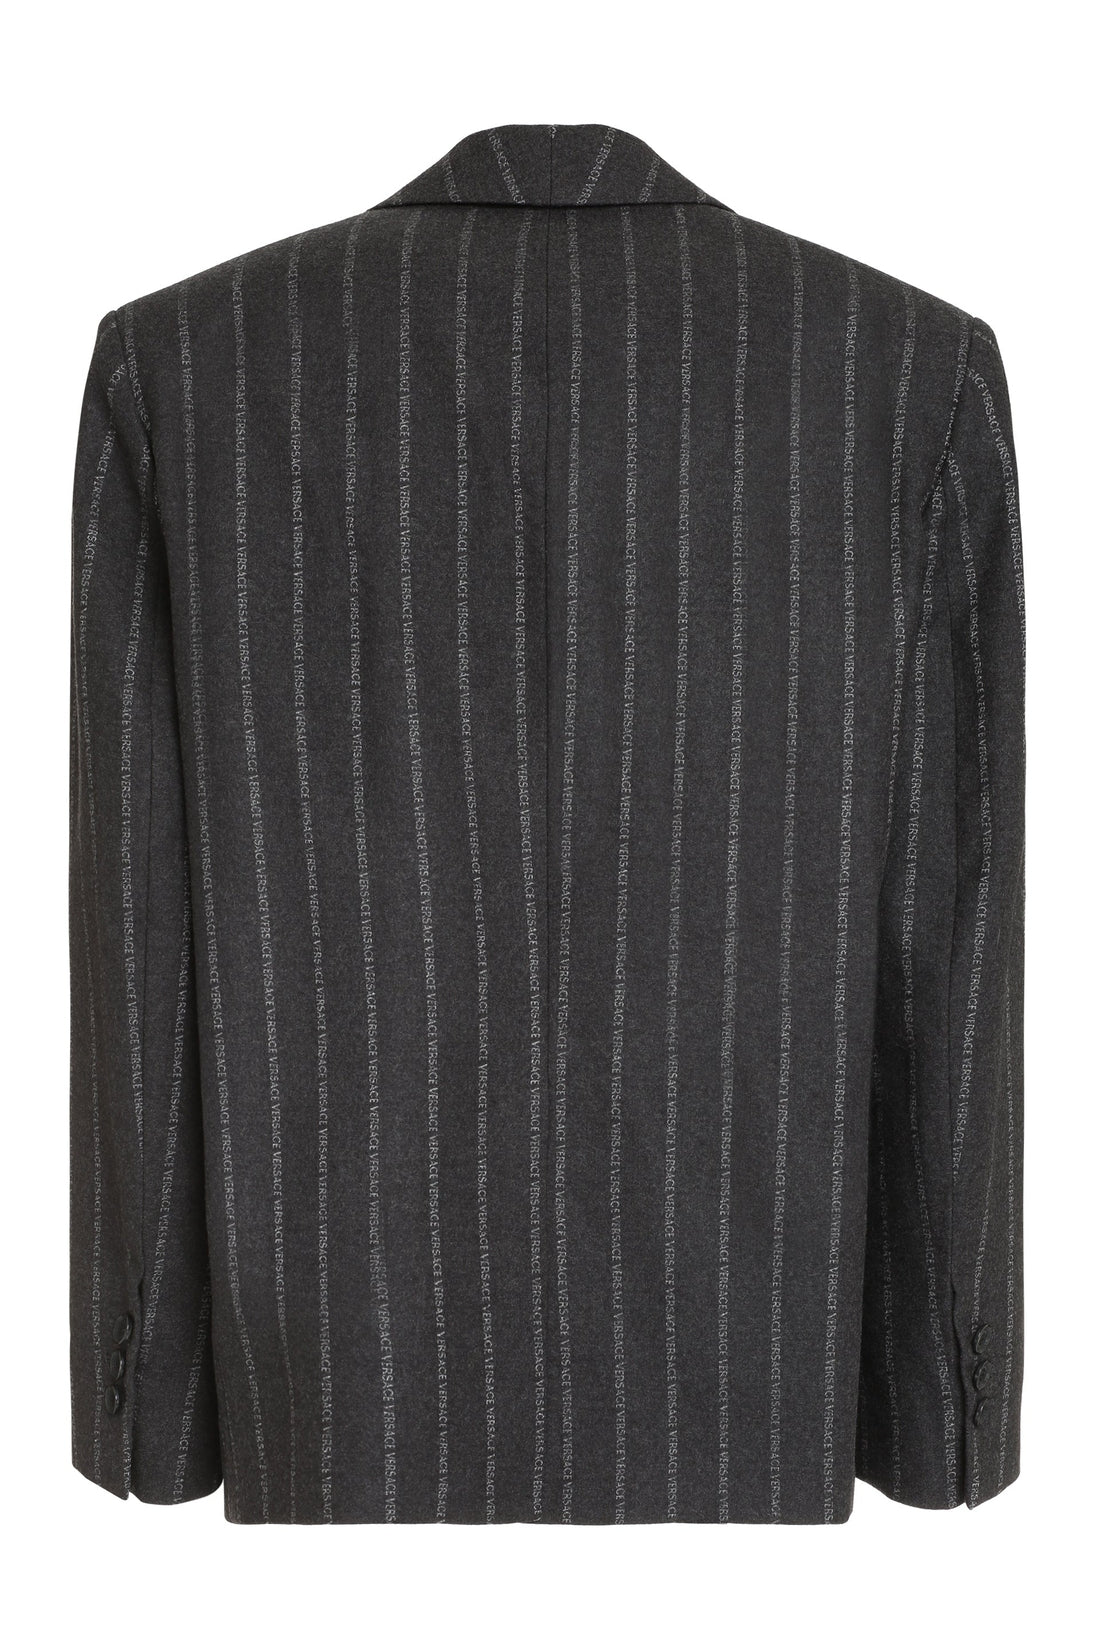 Versace-OUTLET-SALE-Wool pinstripe blazer-ARCHIVIST